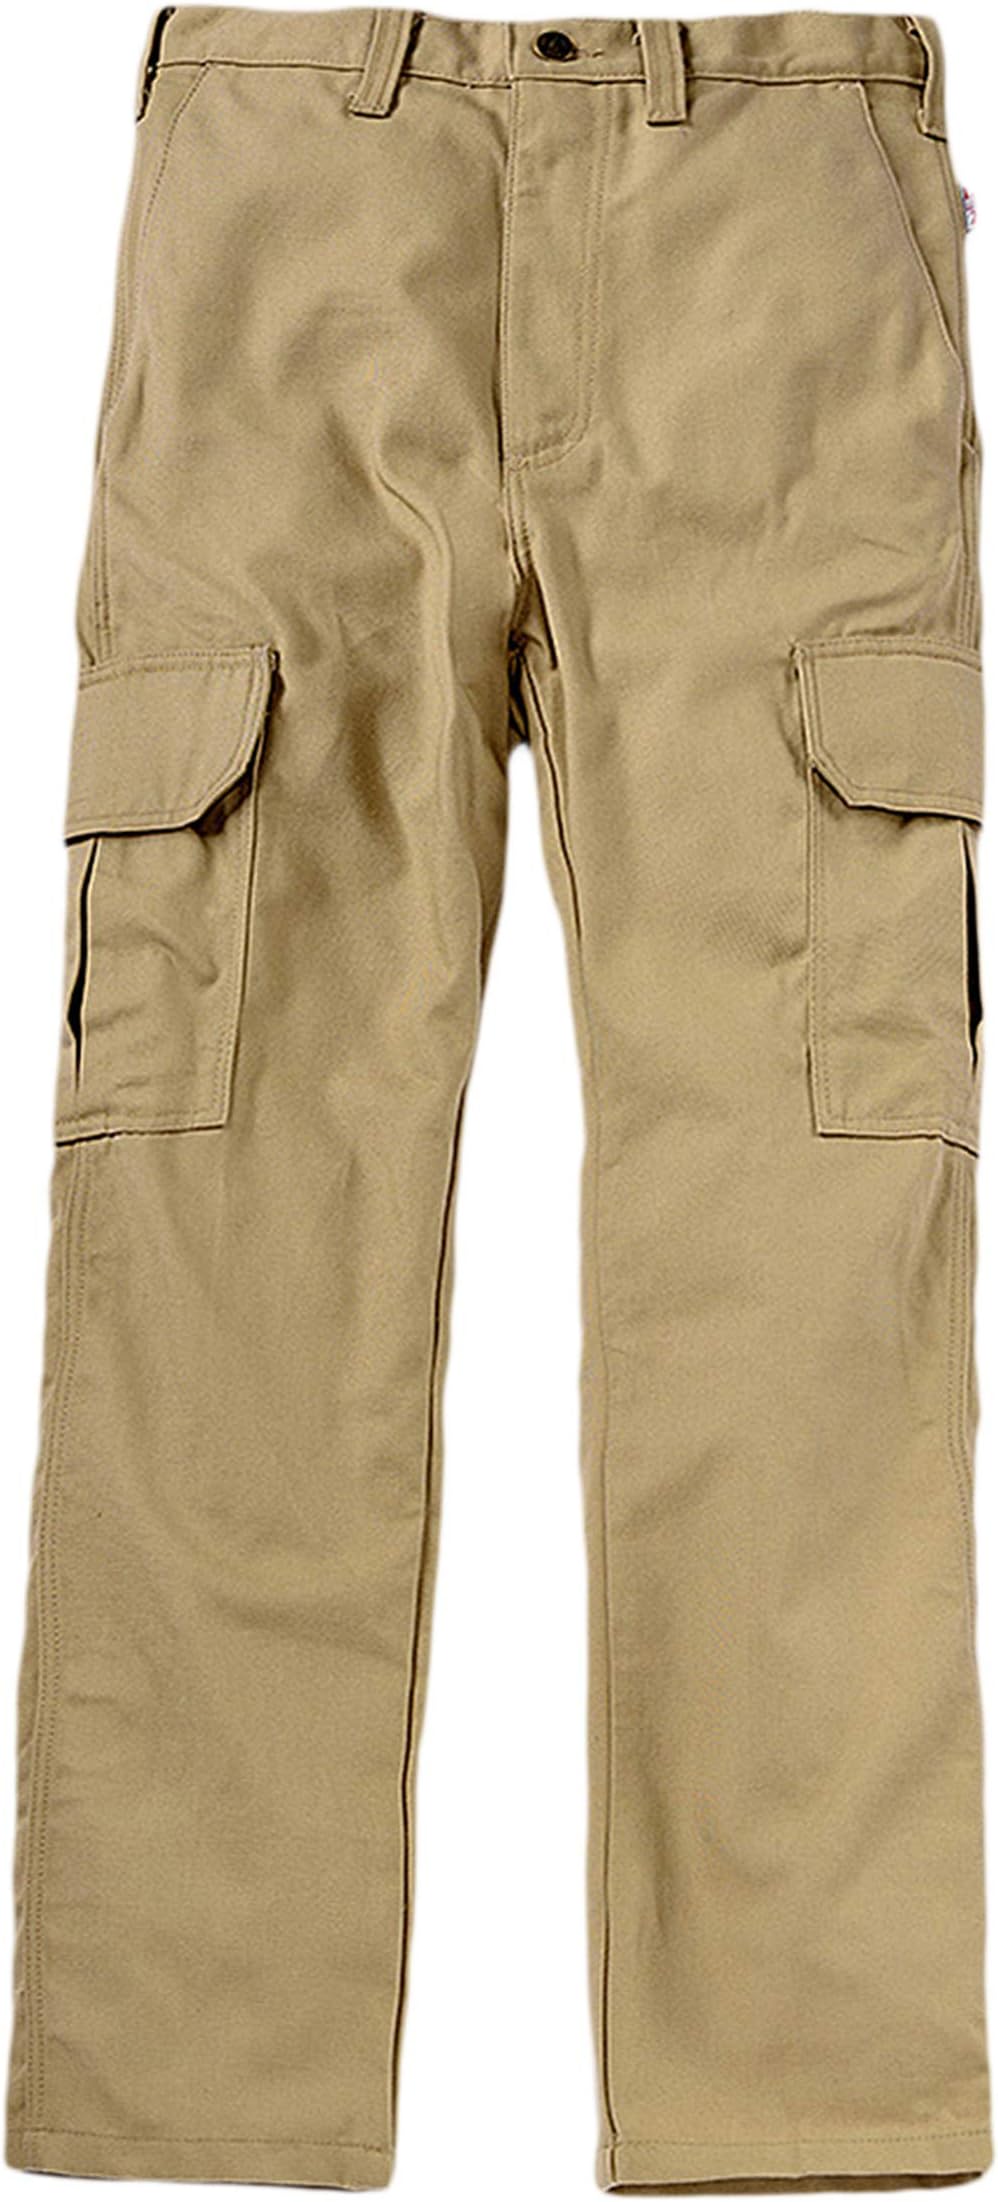 Универсальные брюки-карго больших и высоких размеров Tyndale FRC, хаки